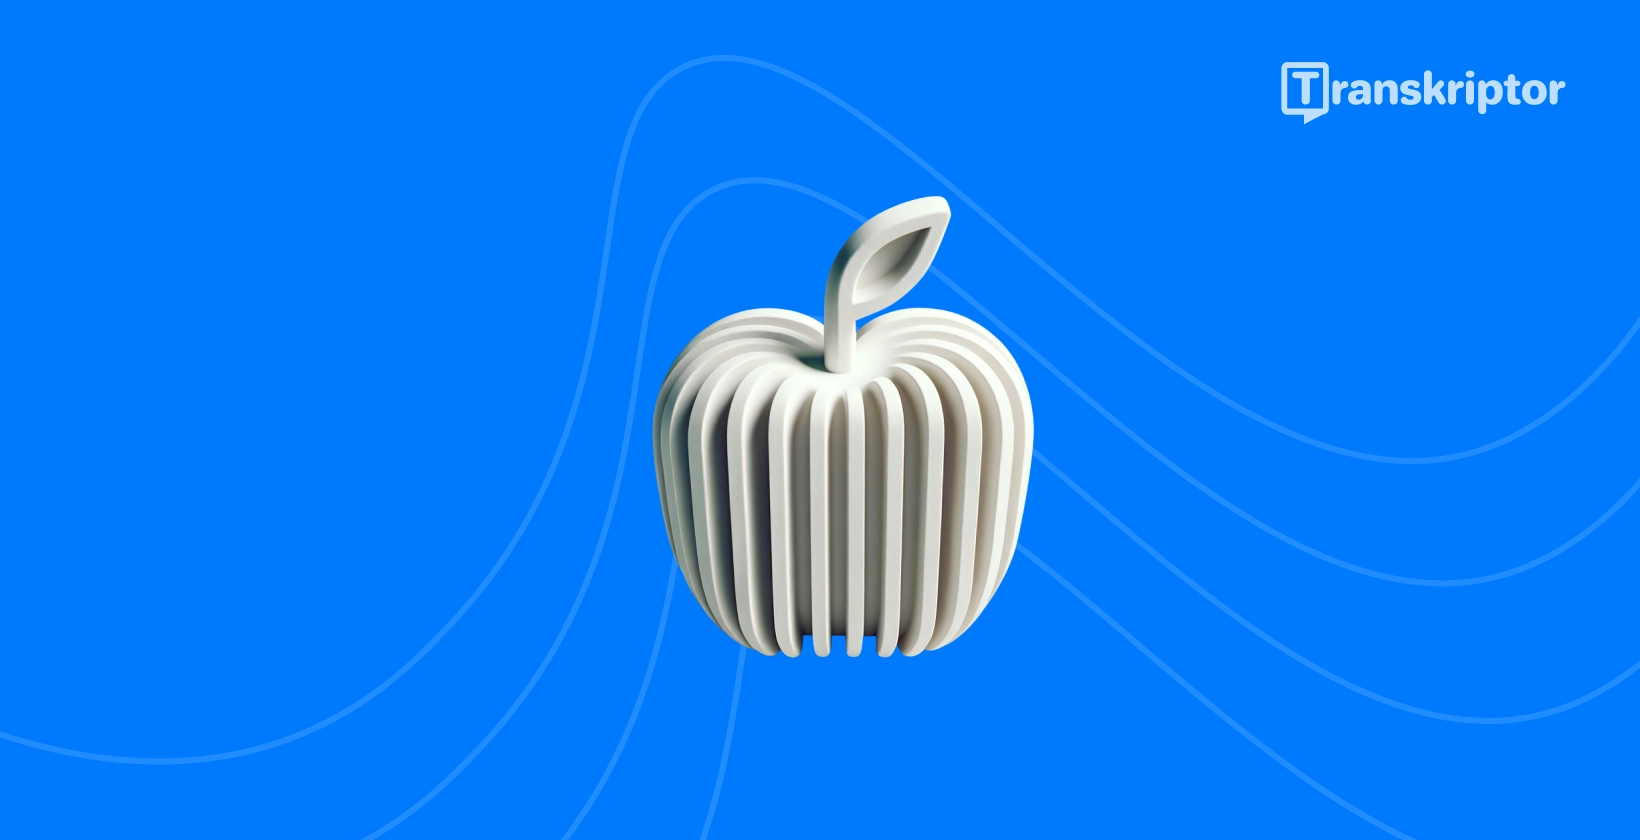 音波を備えた様式化されたリンゴは、iPhoneユーザーが利用できるトップの文字起こしアプリを表しています。